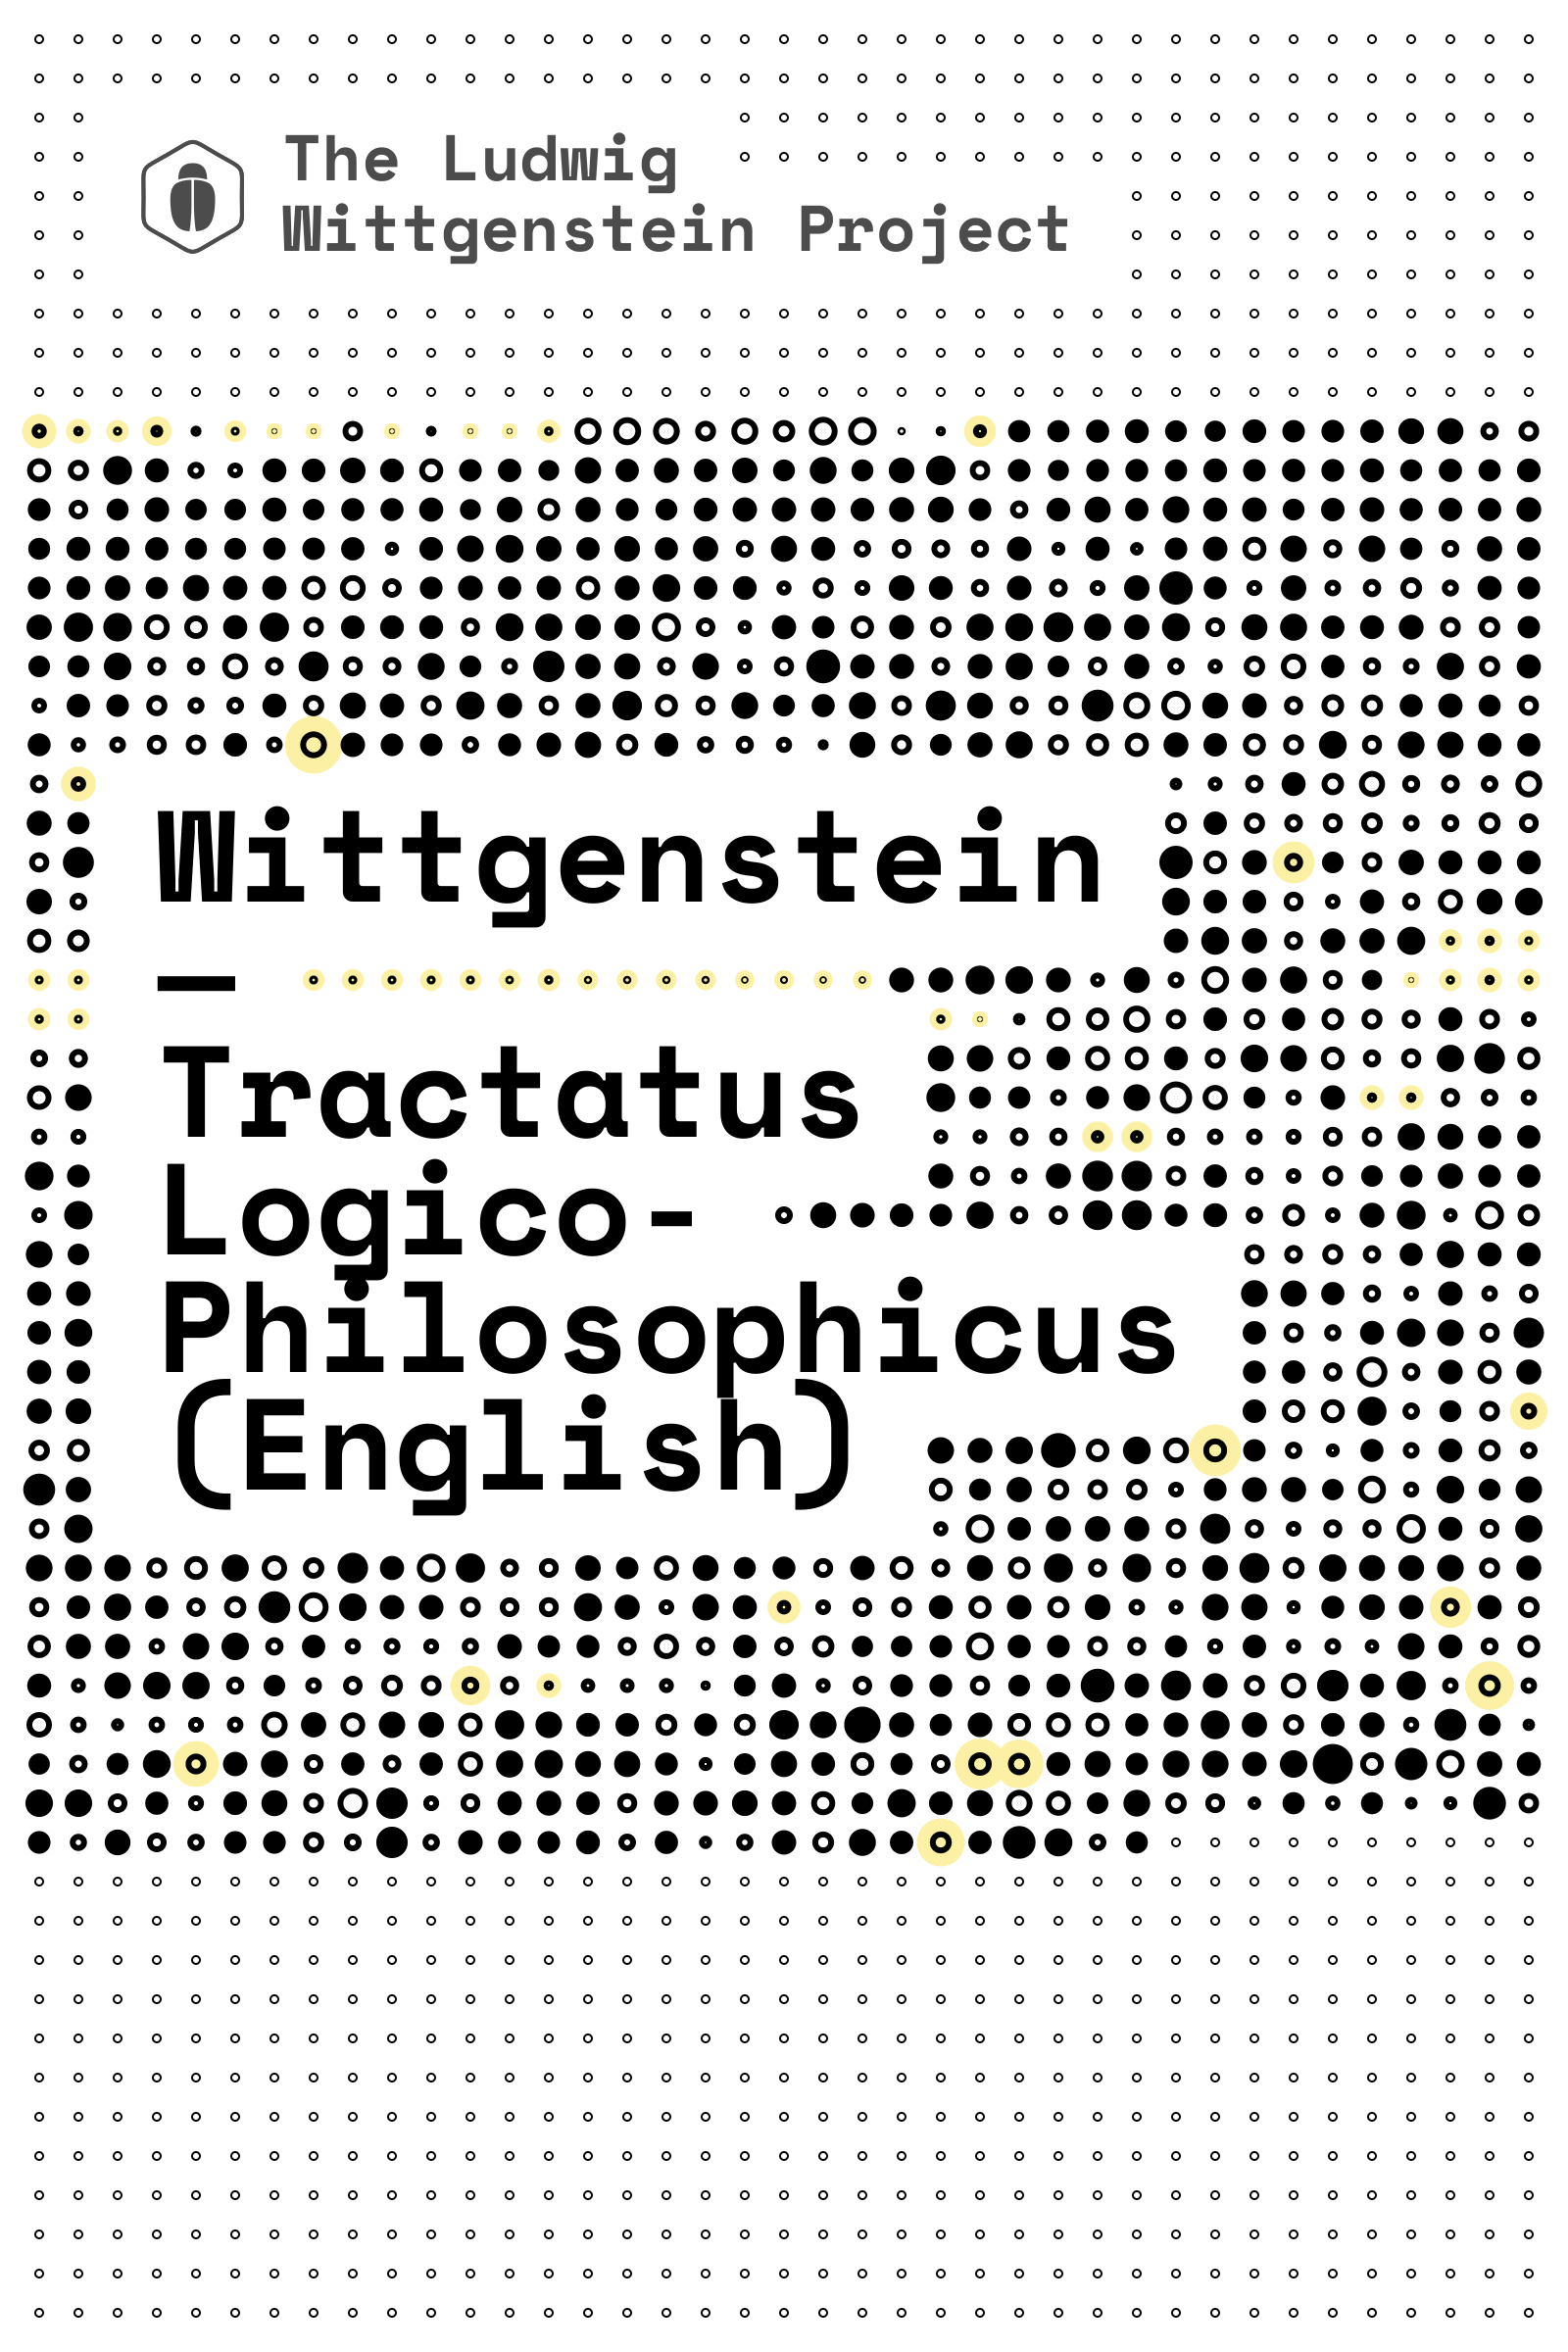 Tractatus Logico-Philosophicus (English) cover